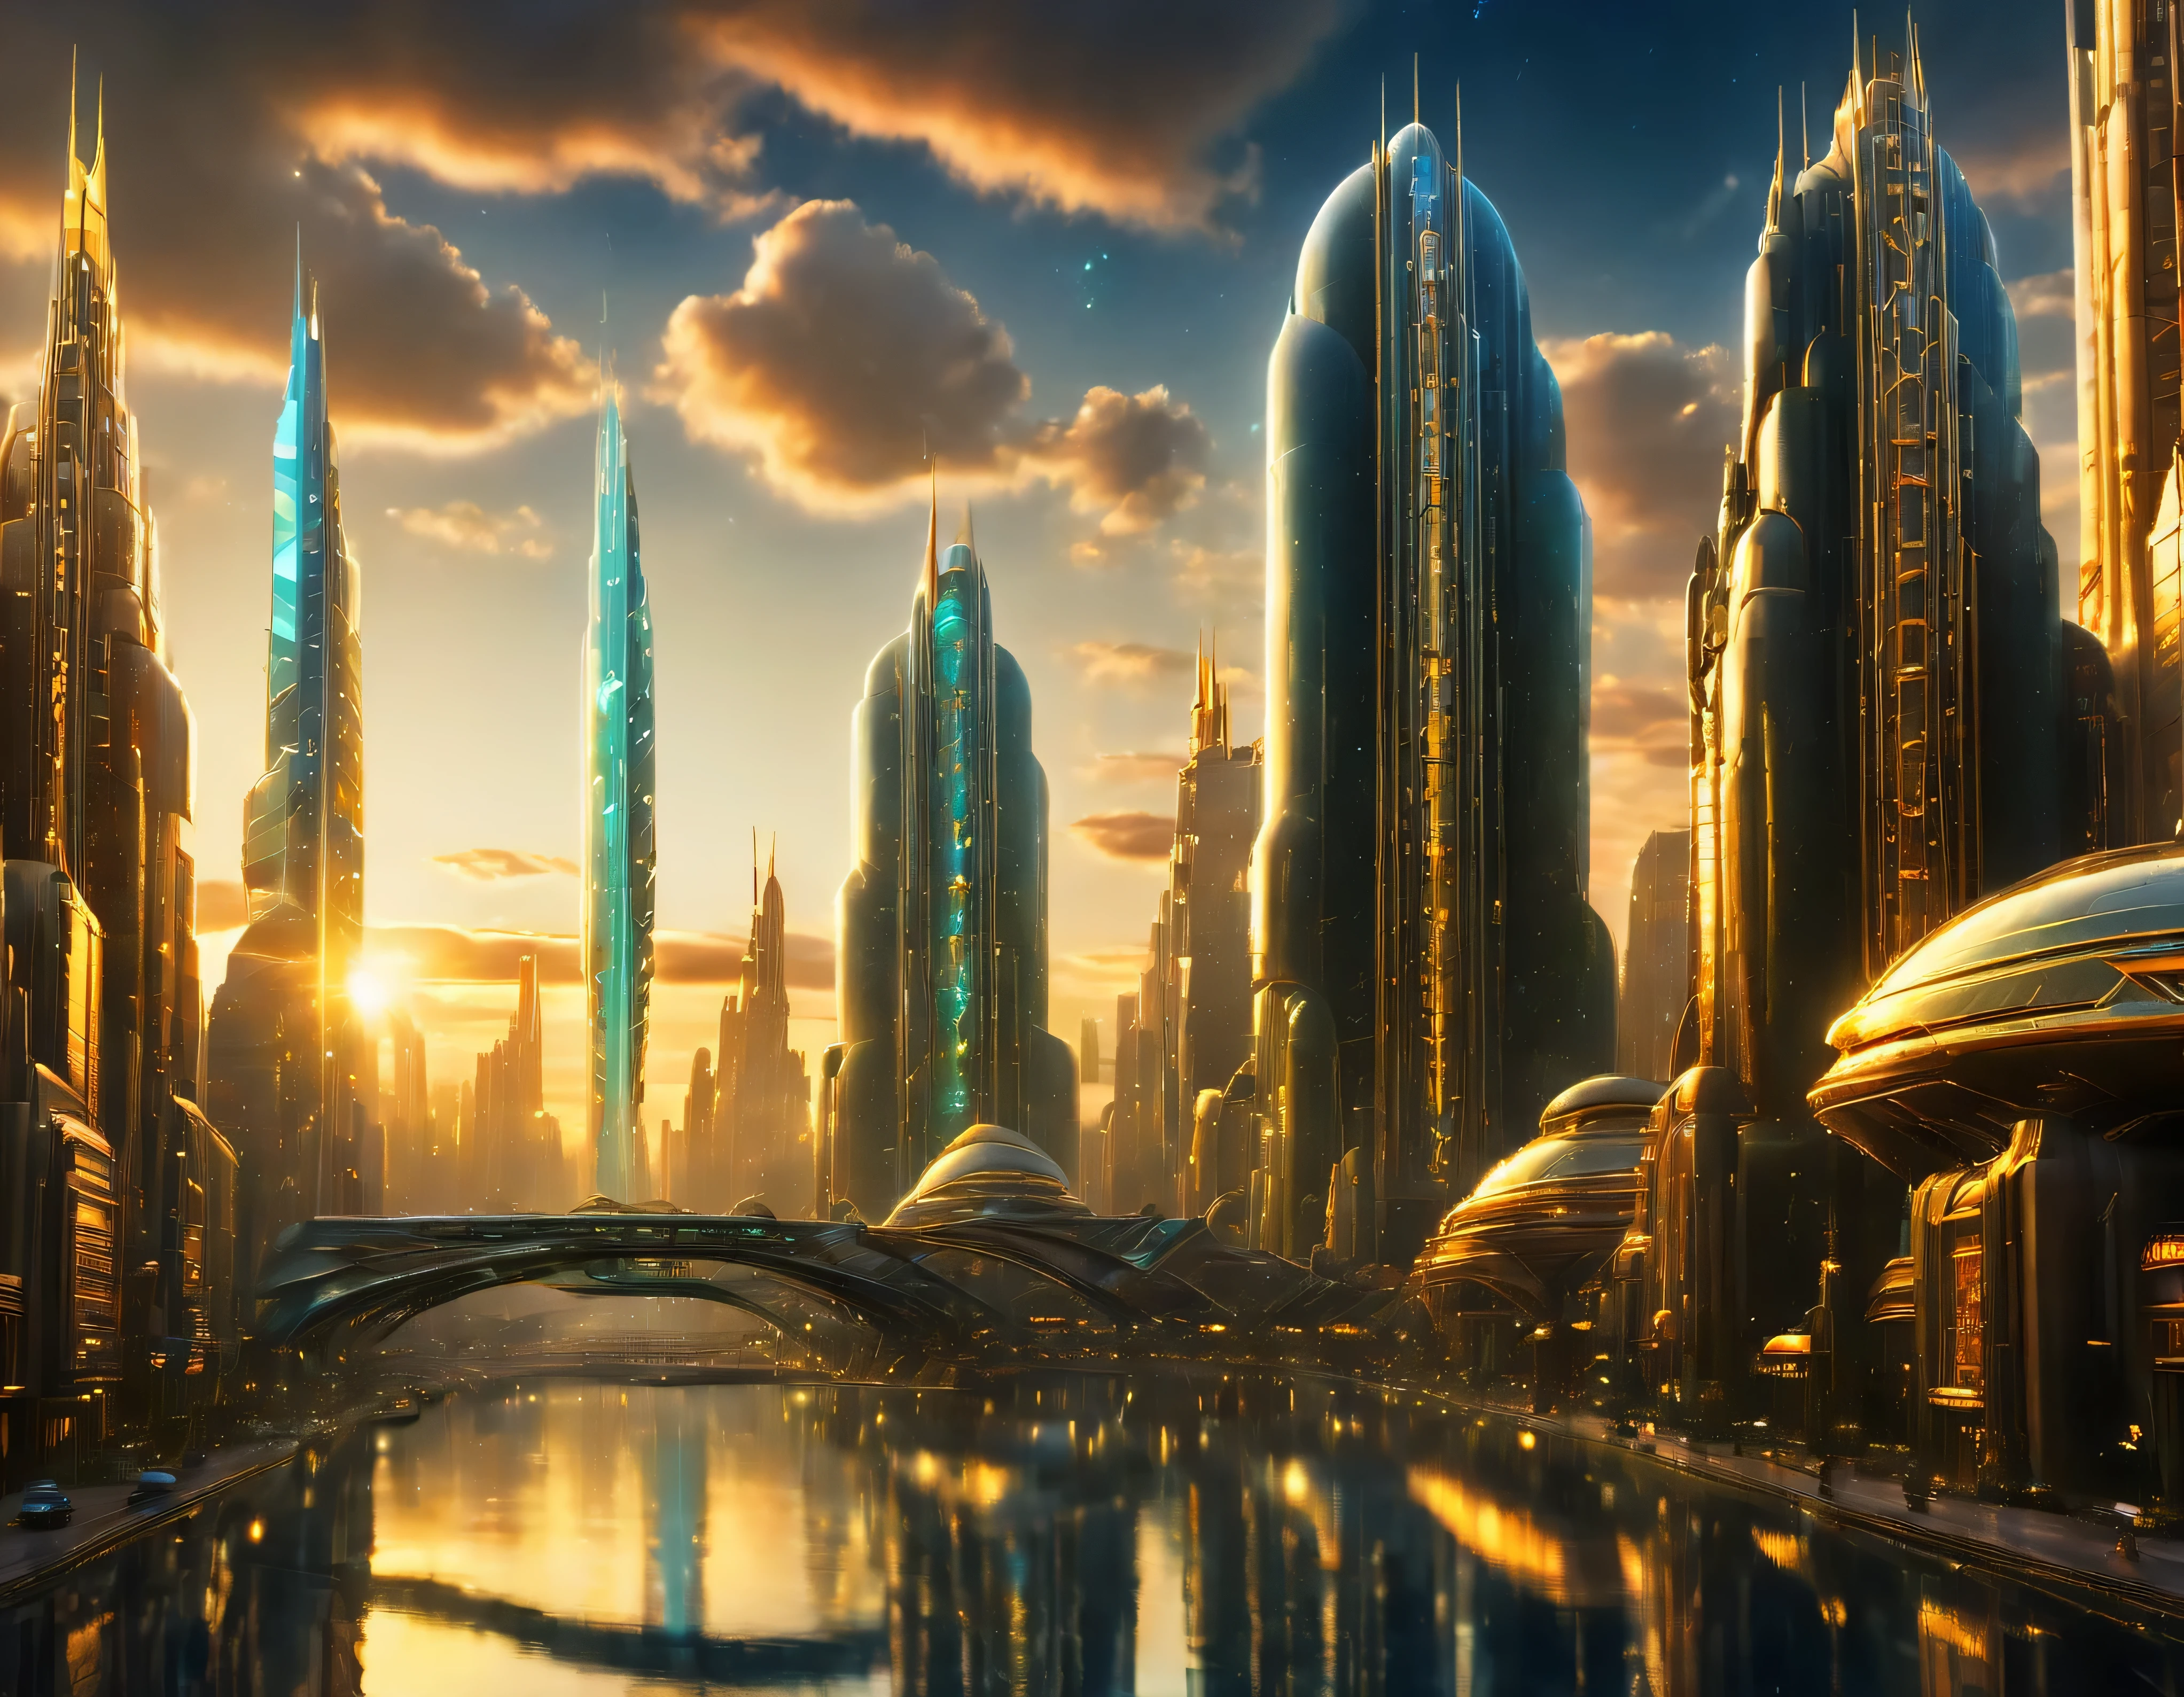 (黃金時段燈光), 特大城市, 科幻小說想像世界的大都市 , 類似未來主義的迪士尼樂園, 和最大的幻想, 巨大的建築物以及橢圓形和十二面體的摩天大樓由金屬和玻璃組合在一起，其中鑽石和彩色照明廣告占主導地位。. 清晰的 8k 影像, (機器的複雜細節), 與許多建築物在一起.(頂級品質傑作).(逼真的影像), 直至背景的絕對清晰度